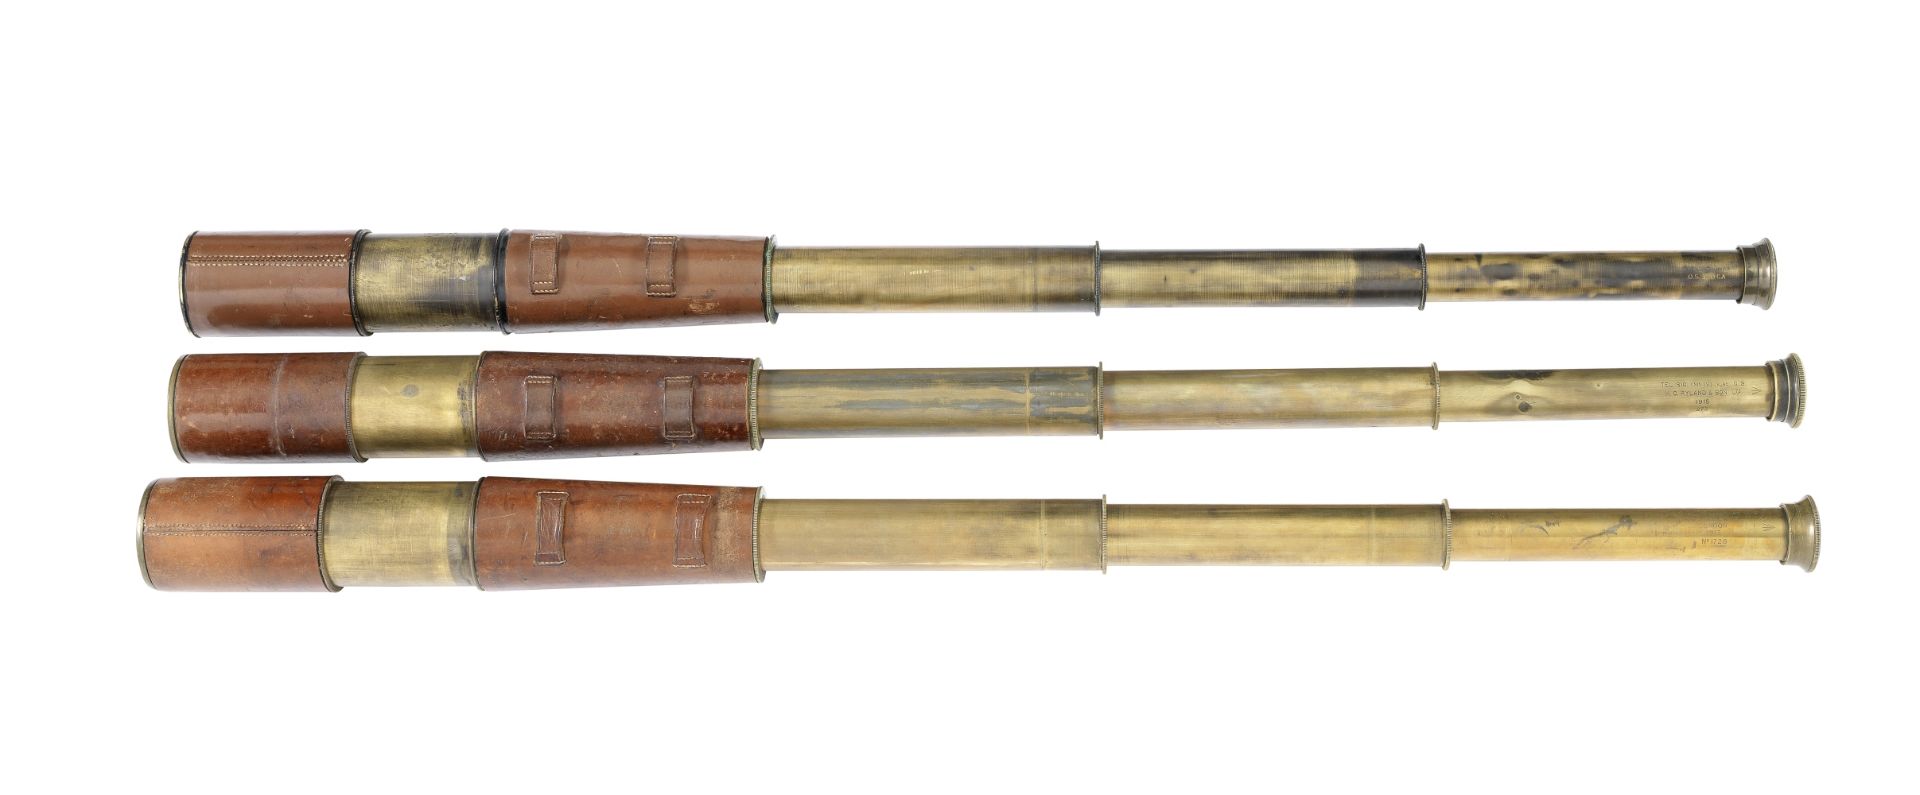 Three three-draw brass spotting-scopes